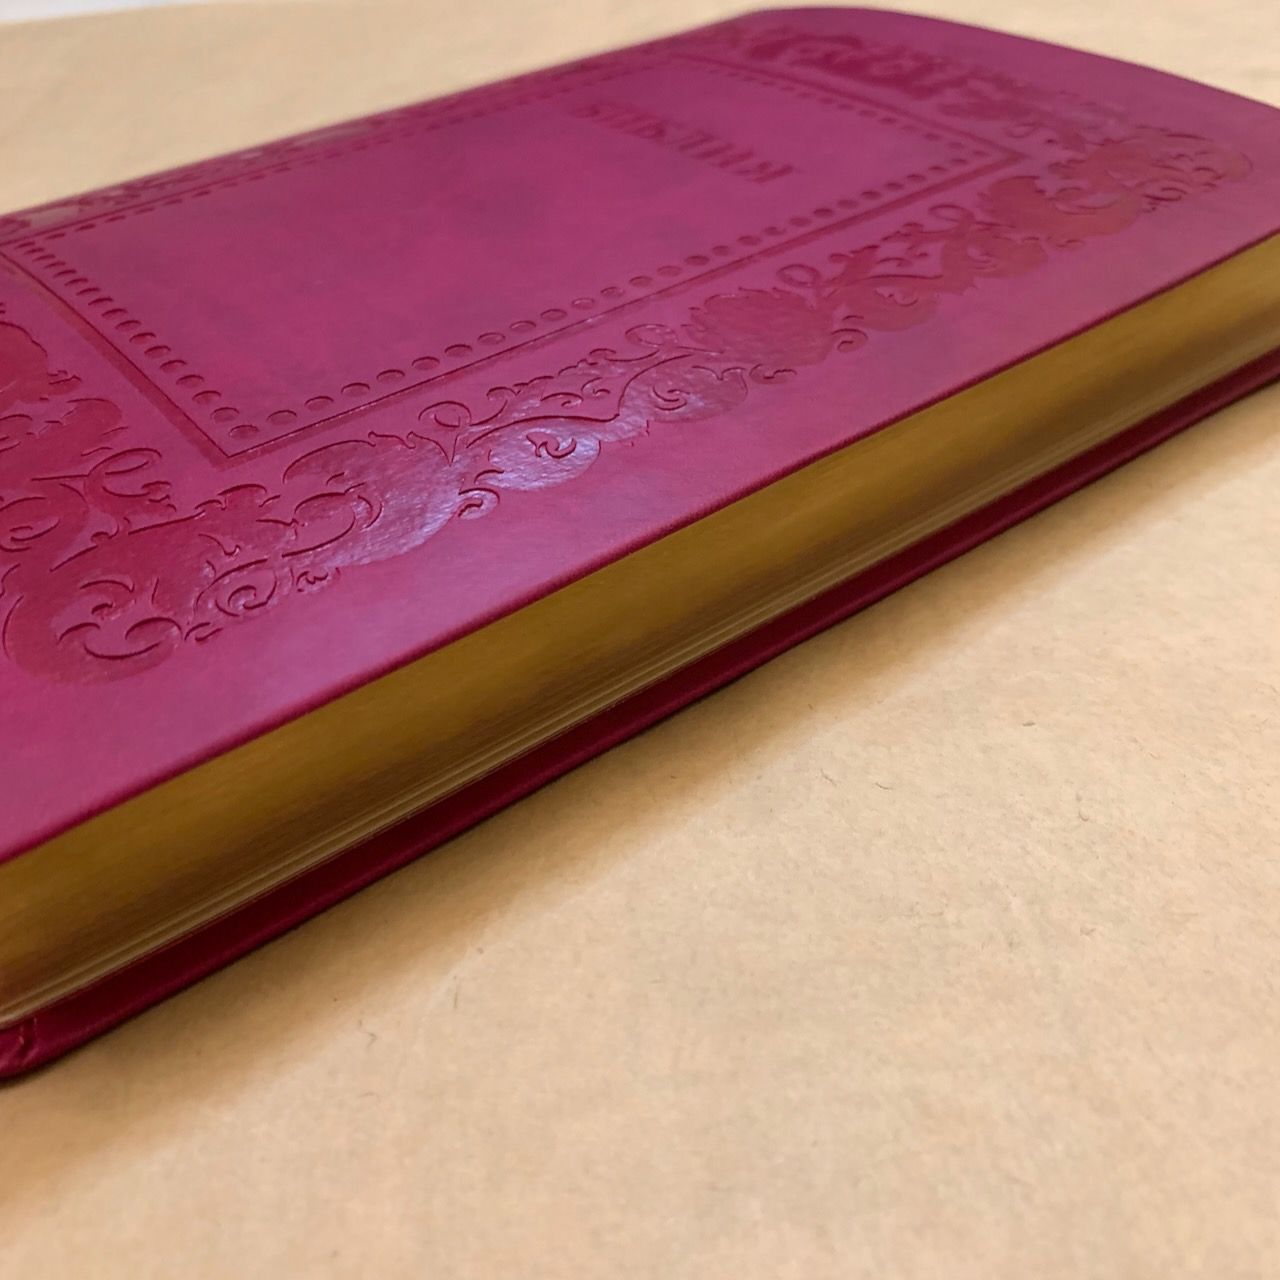 Библия 076 код H4,  дизайн "термо рамка барокко", переплет из искусственной кожи, цвет малина матовый